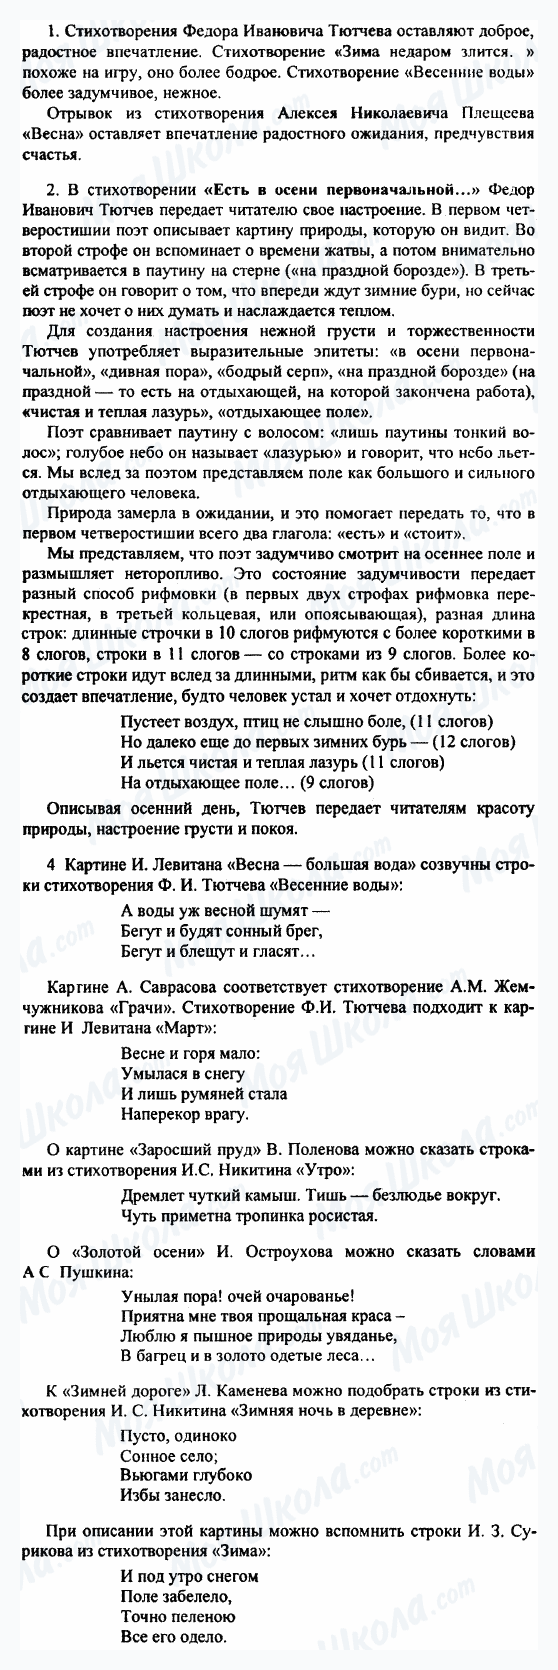 ГДЗ Русская литература 5 класс страница 1-2